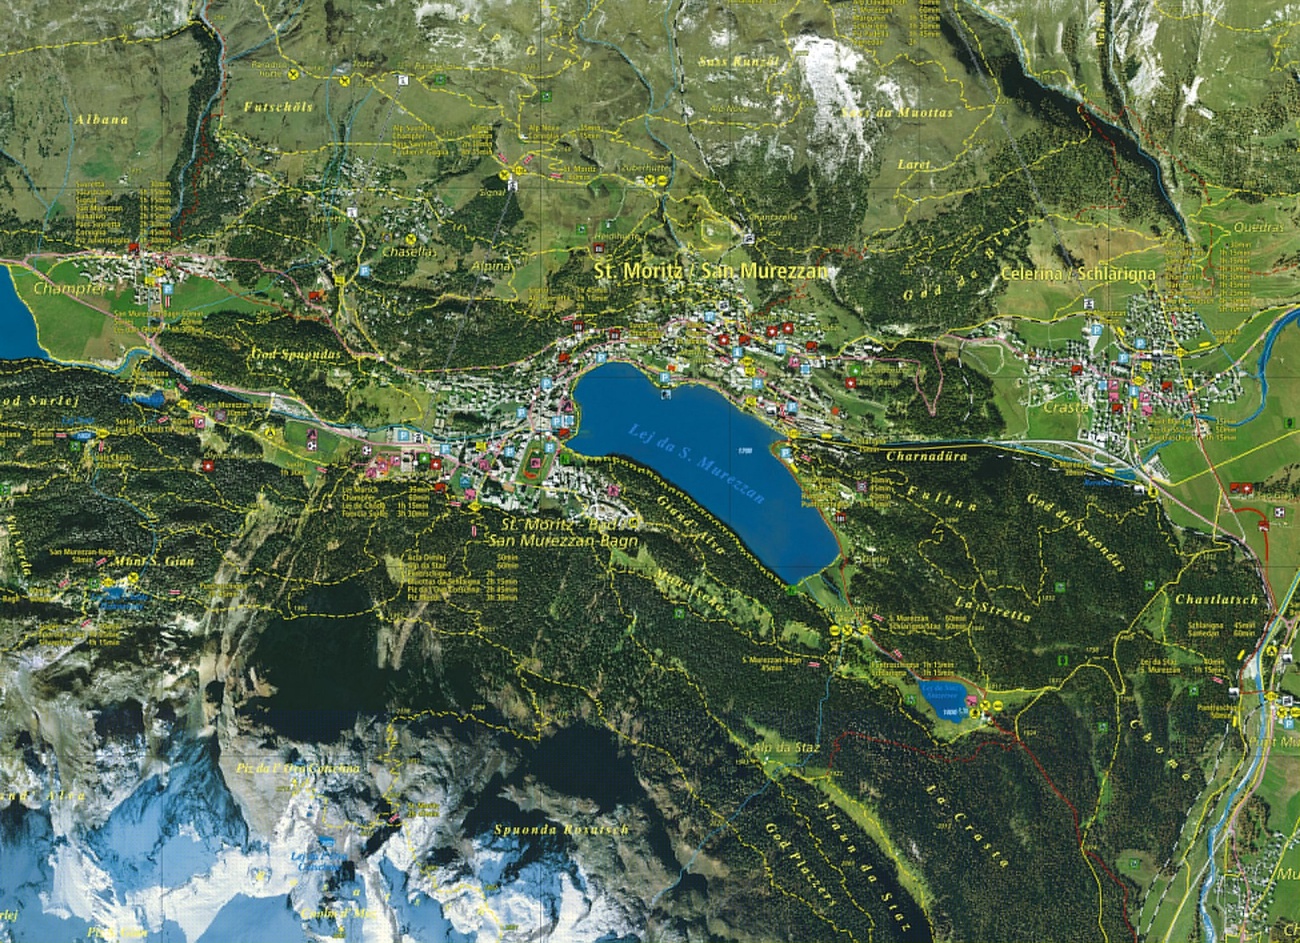 圣莫里茨 (St. Moritz) 的数字地图将航拍图像与地形要素相结合。该地图由Endoxon公司创建于2001年。